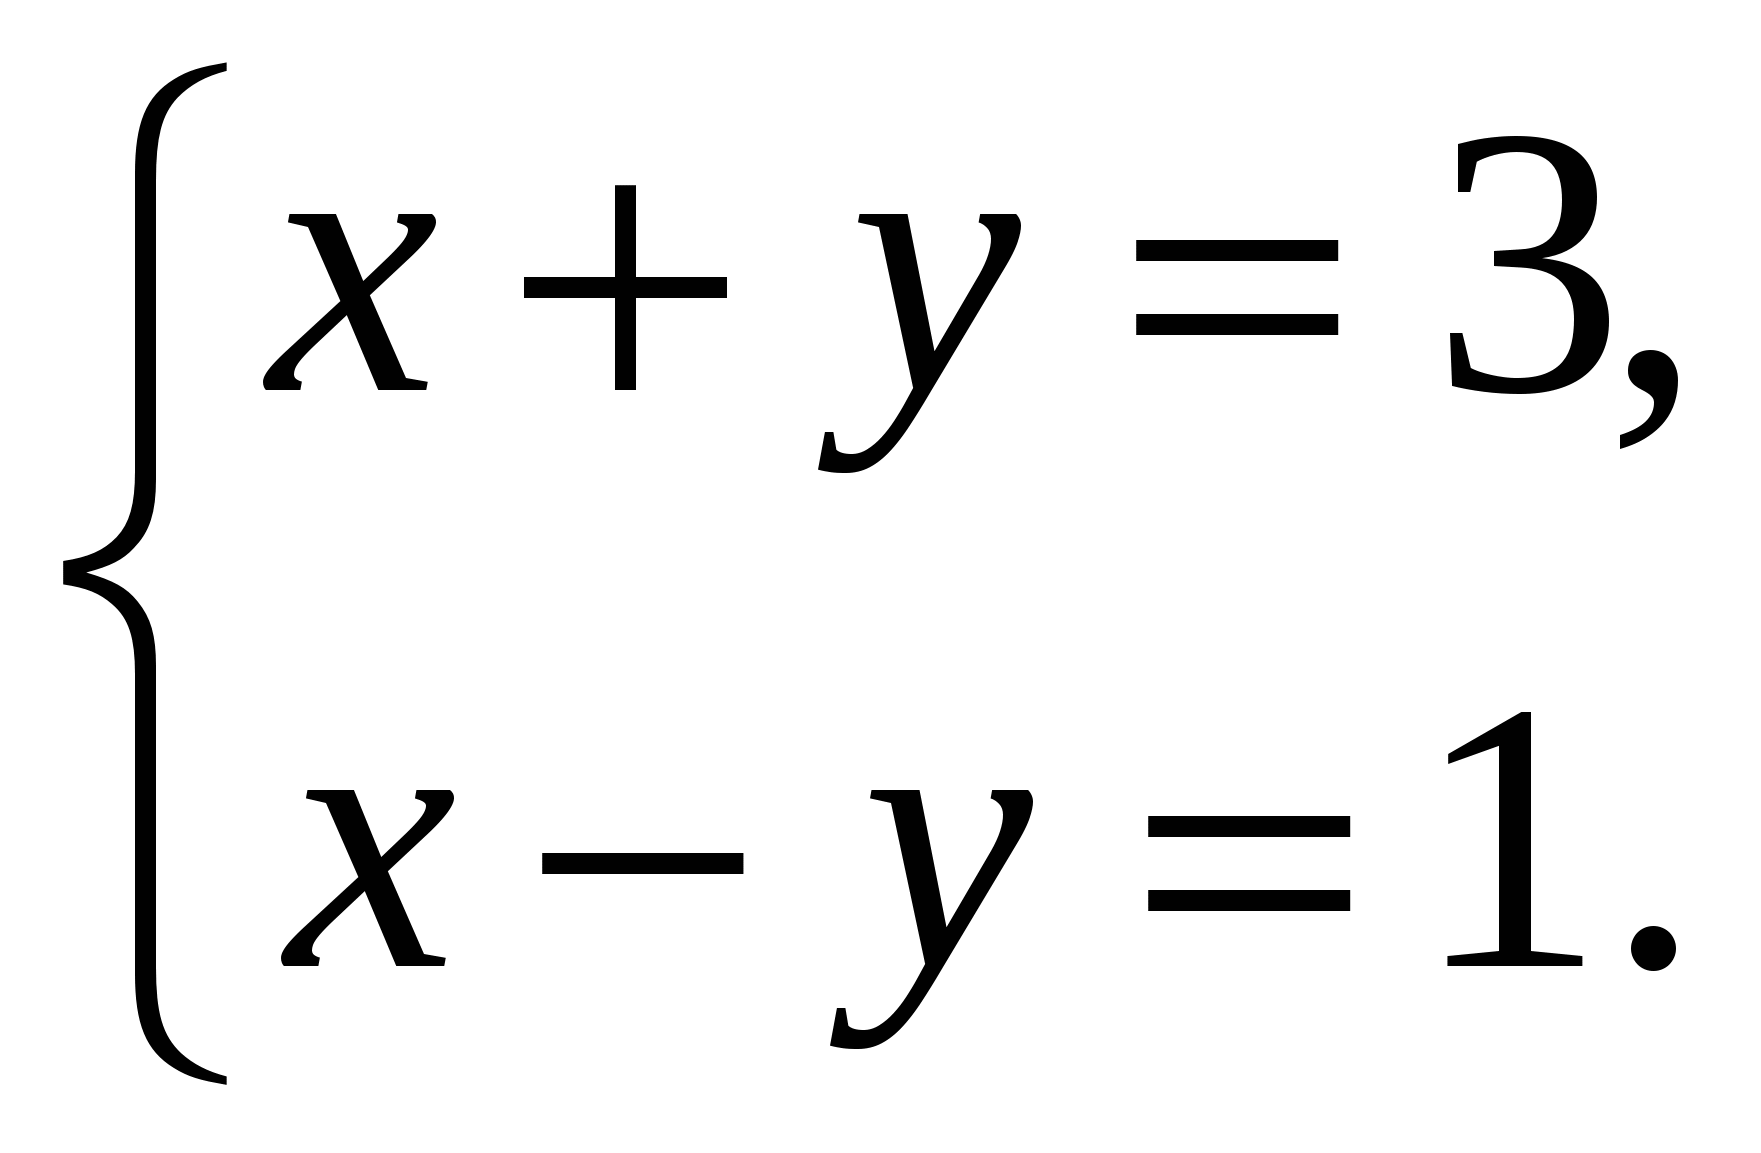 Справочный материал по теме Решение систем уравнений методом сложения